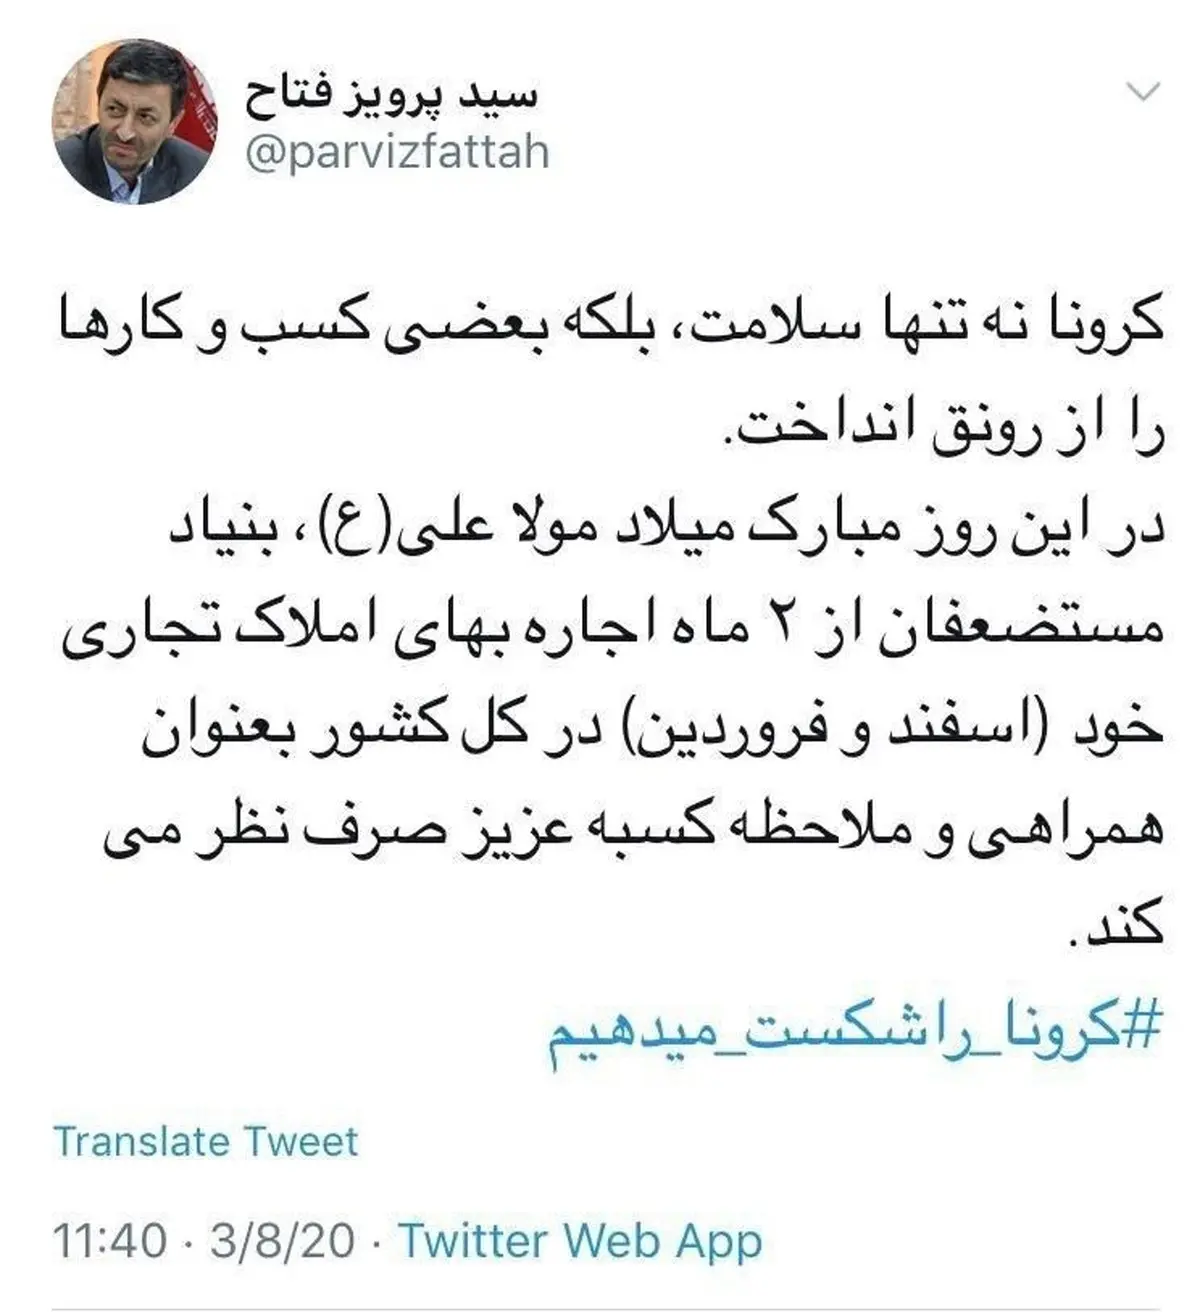 خبر خوش بنیاد مستضعفان/ اجاره بهای اسفند و فروردین بخشیده شد
